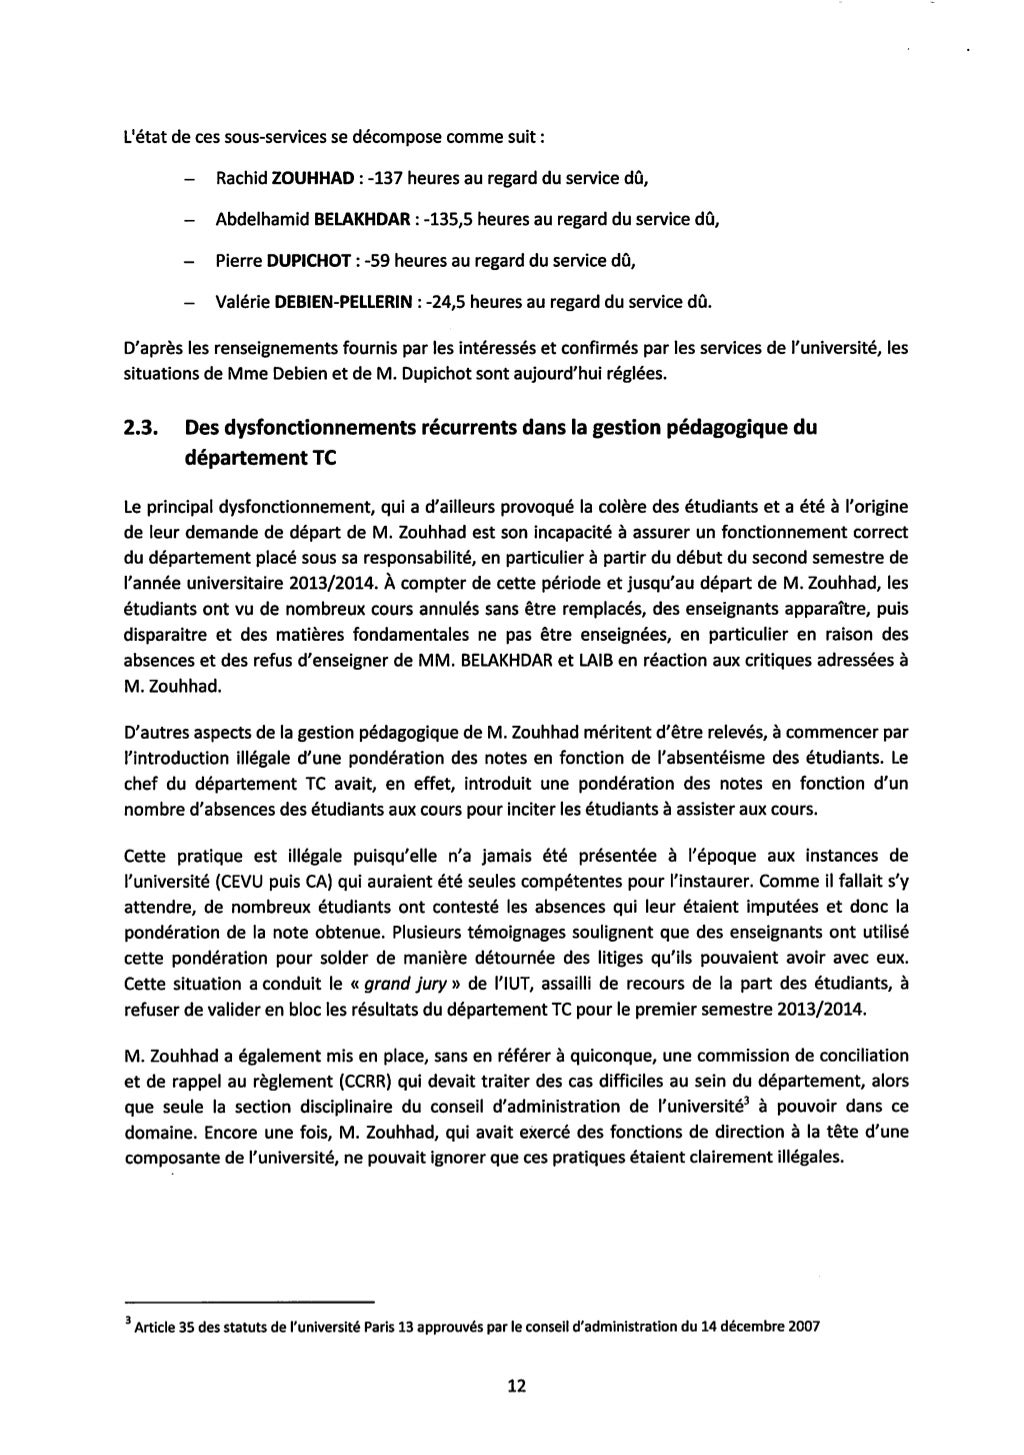 Université Paris XIII, IUT: rapport de l'IGAENR sur les dysfonctionne…